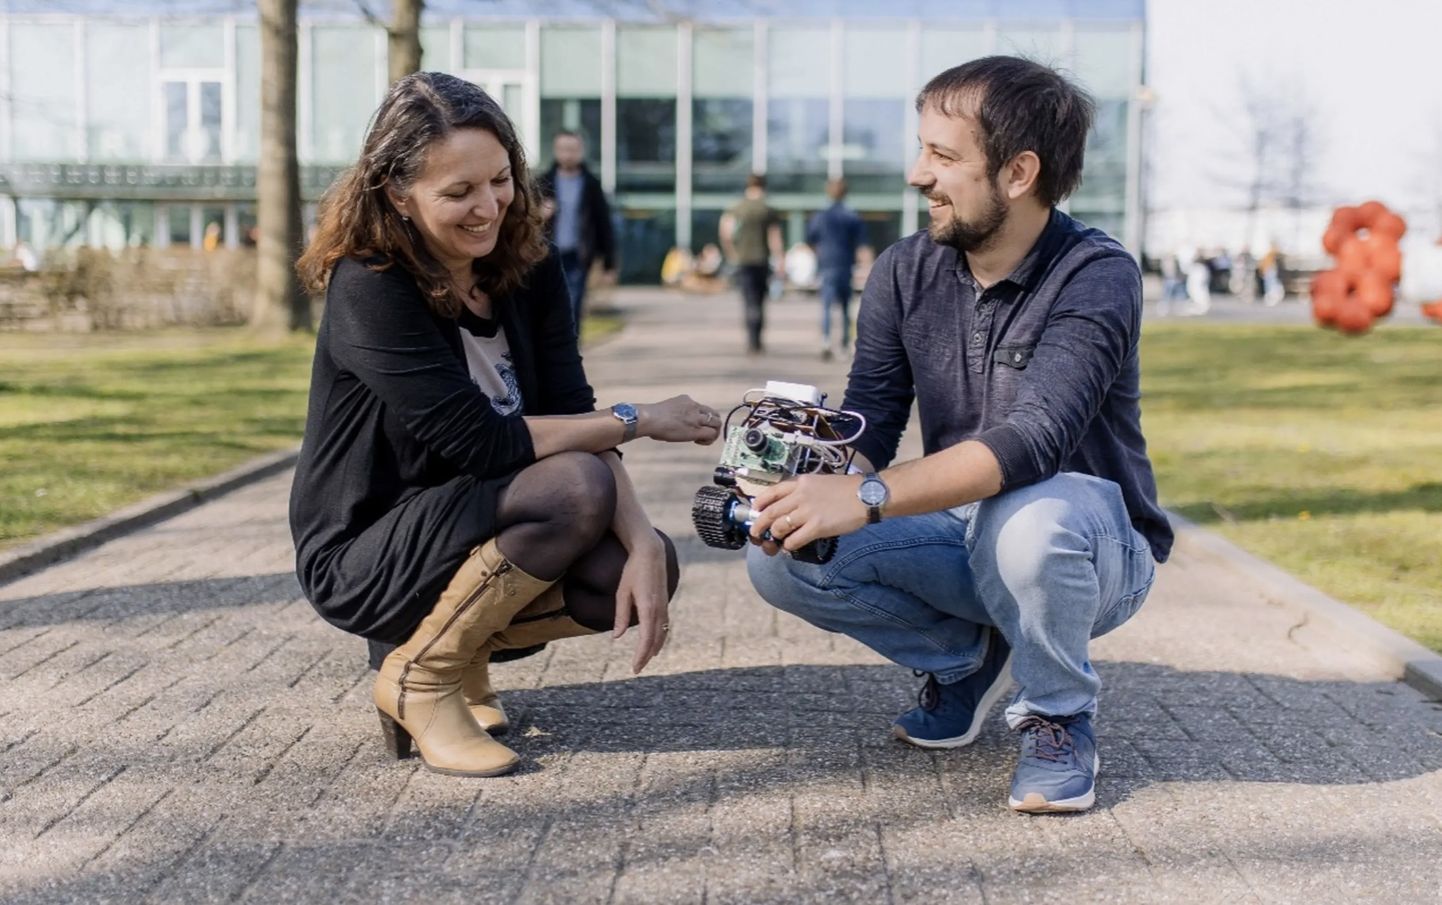 Elisabetta Chicca ja Thorben Schoepe robotiga, mille juhtroboti tegemisel on mõõtu võetud äädikakärbse ajust.